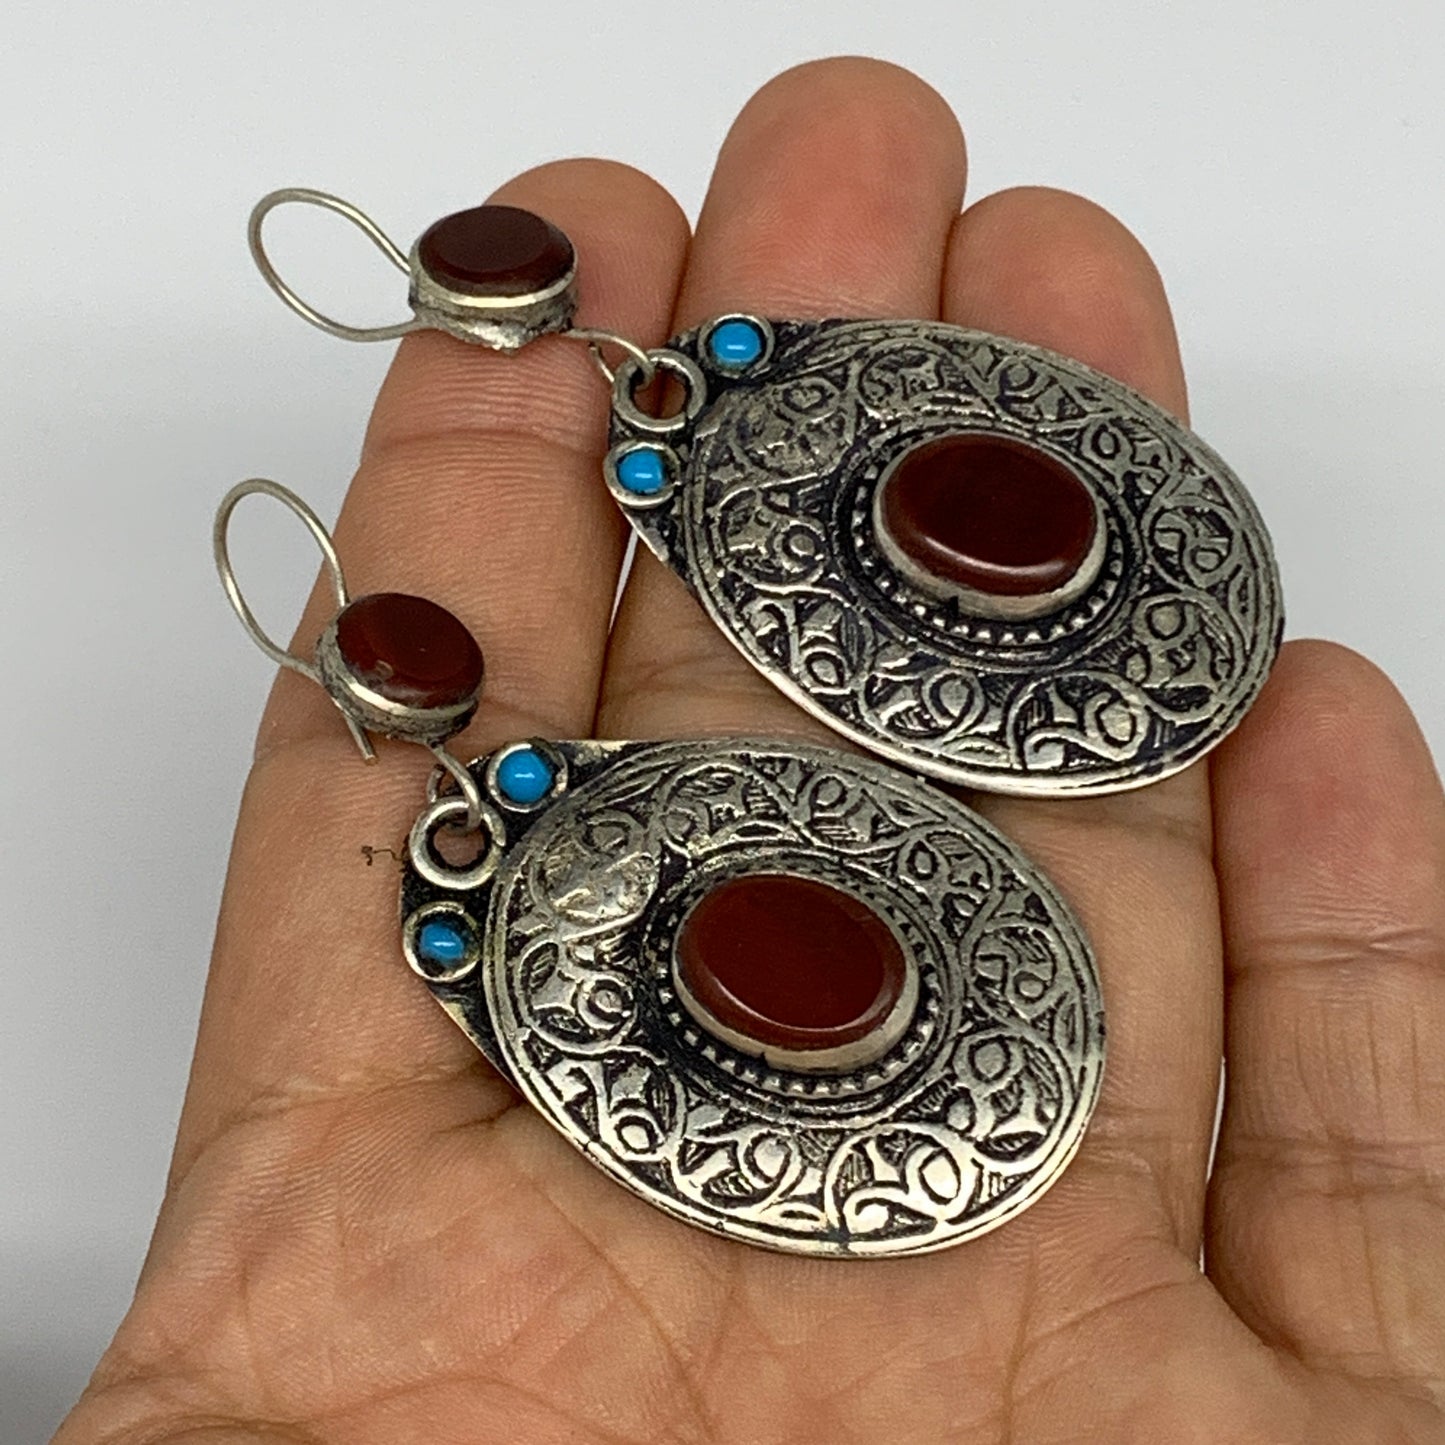 1pr, 2.5"x1.1" Turkmen Earring Tribal Jewelry Carnelian Oval Boho, B14305